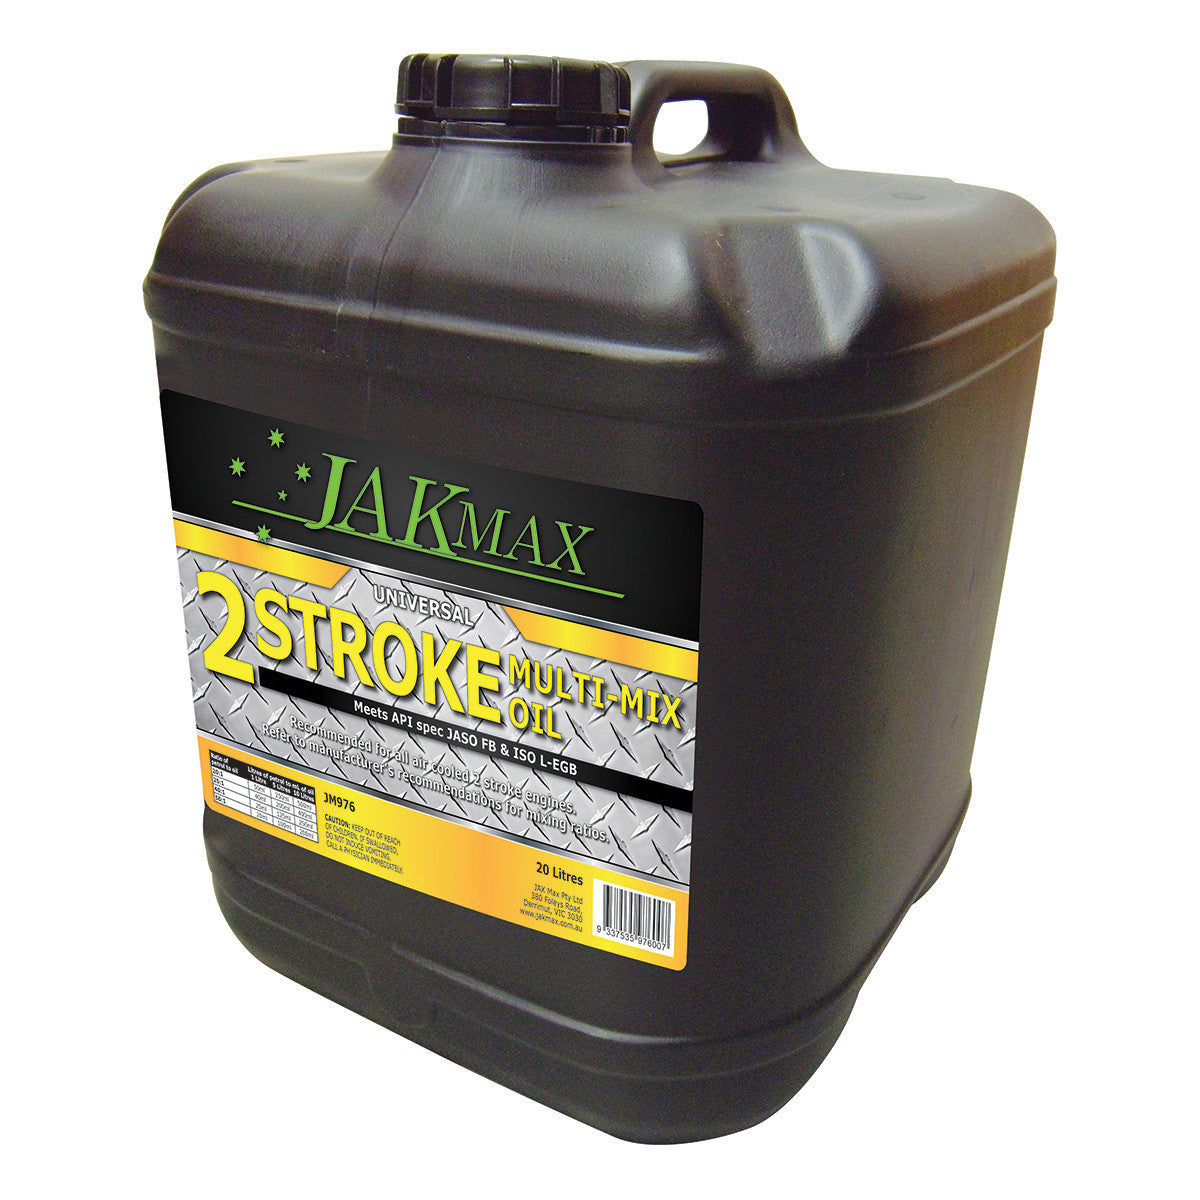 JakMax 2-Stroke Universal Multi-Mix Oil 20L